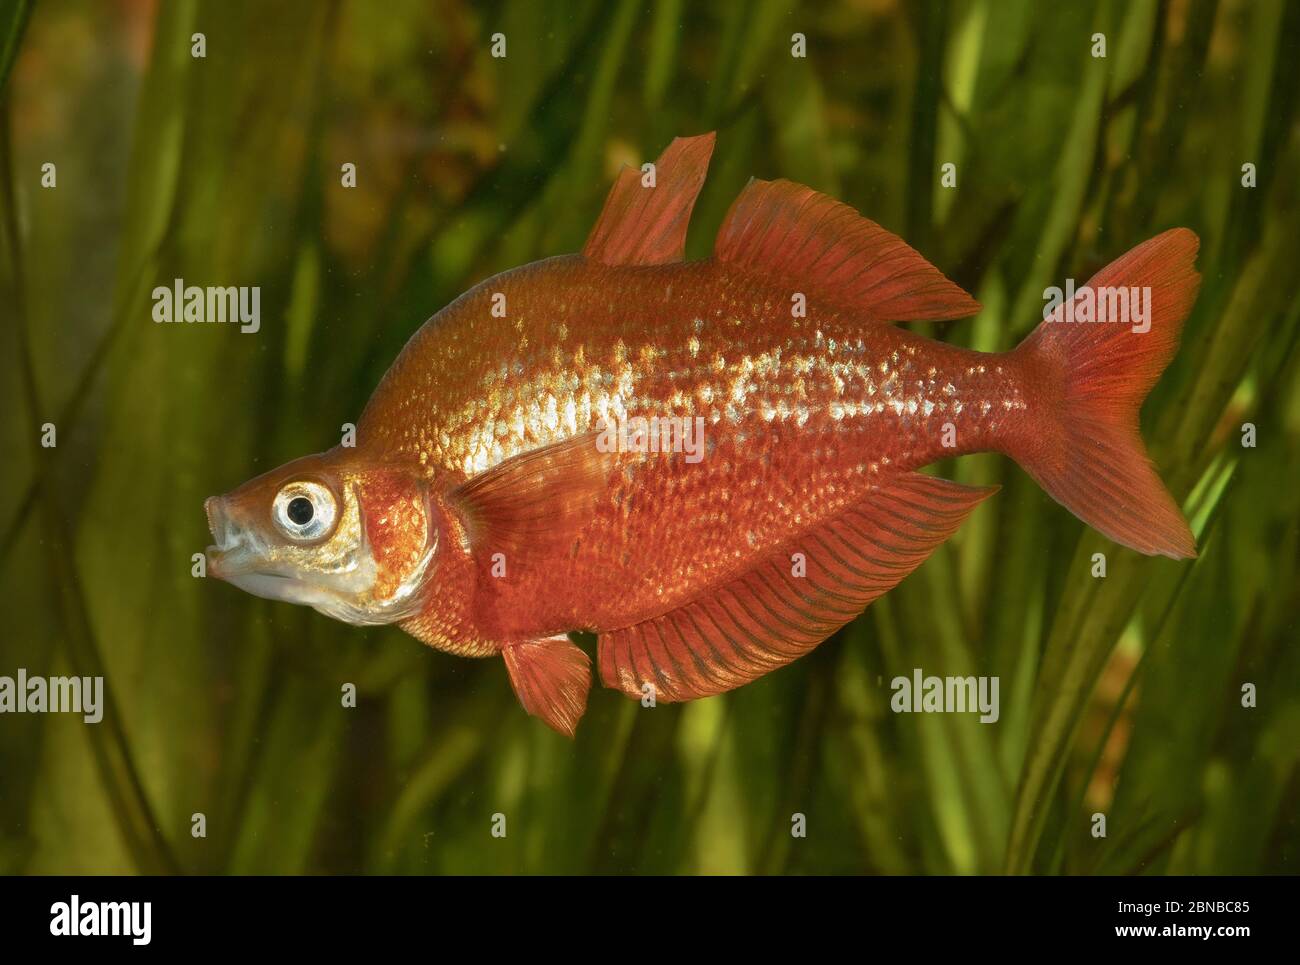 Poisson-pluie rouge, poisson-pluie rouge saumon, Nouvelle-Guinée Irian-Rouge Rainbowfish (Glosslepis incisus), comportement impressant, coloration nuptiale Banque D'Images